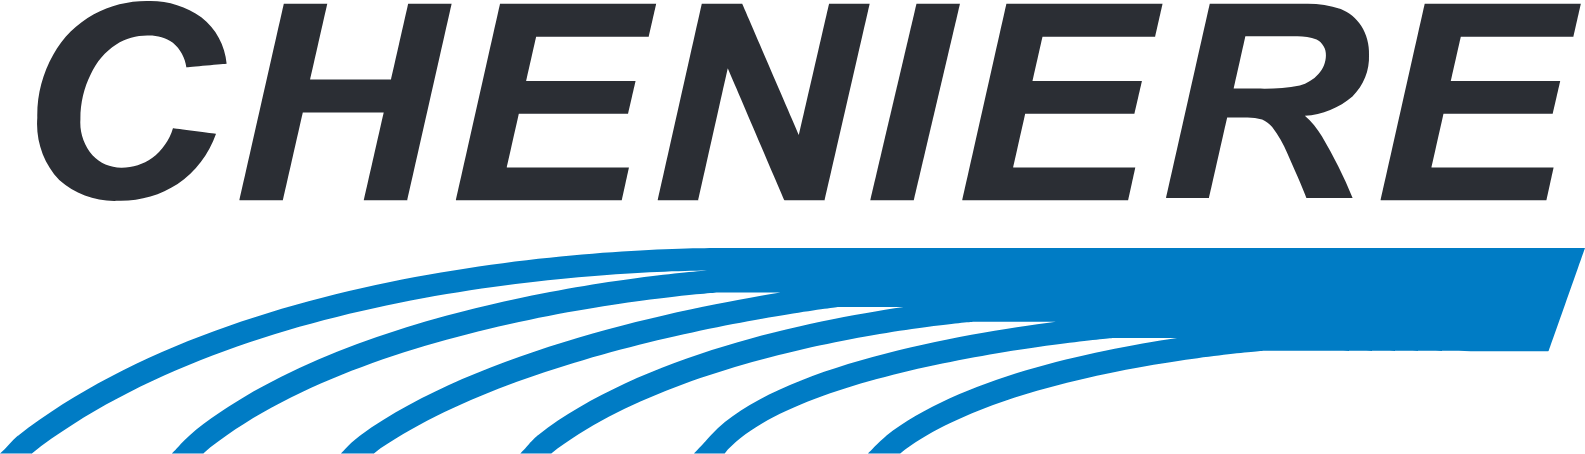 Cheniere Energy
 logo large (transparent PNG)